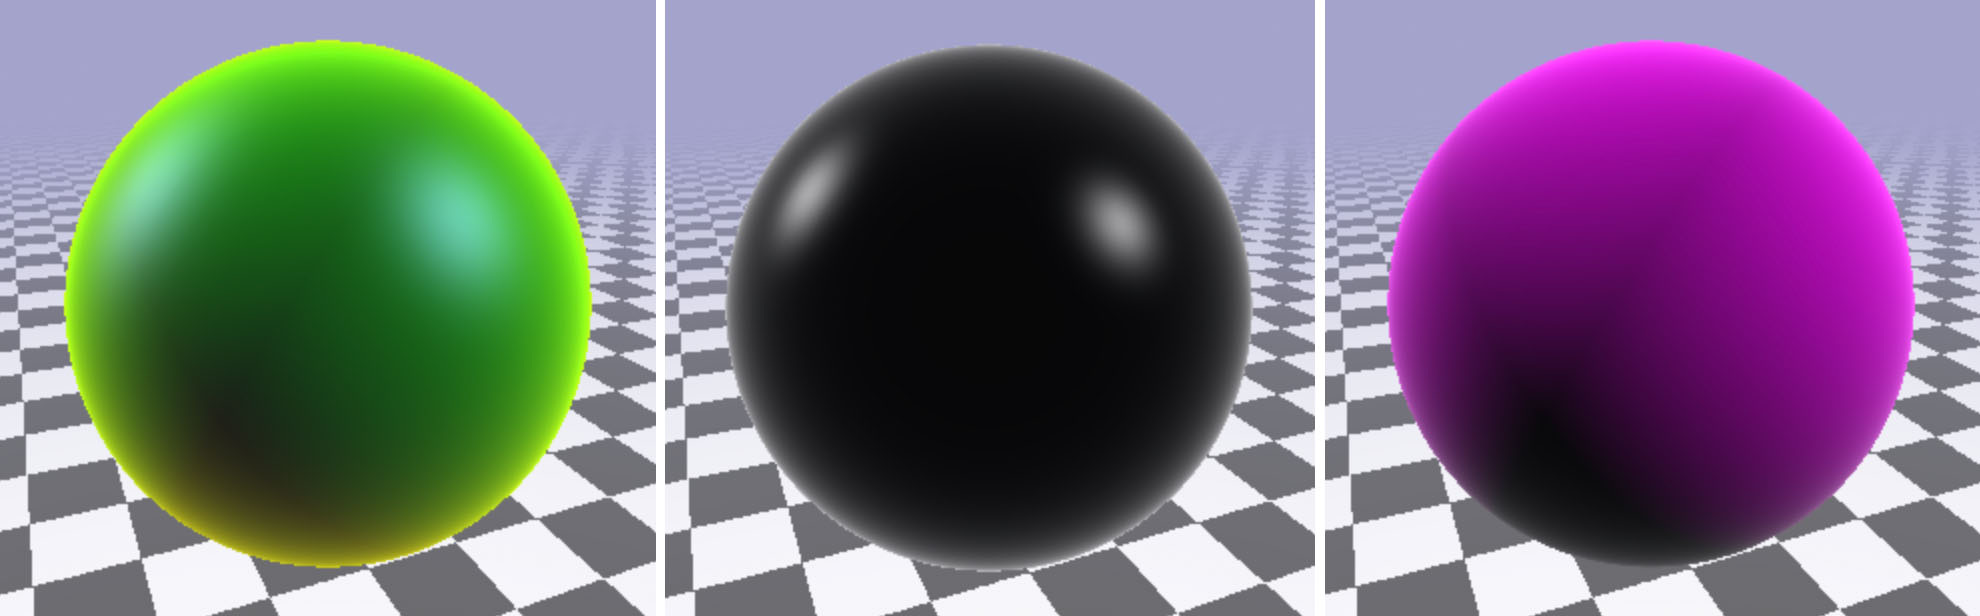 three_spheres